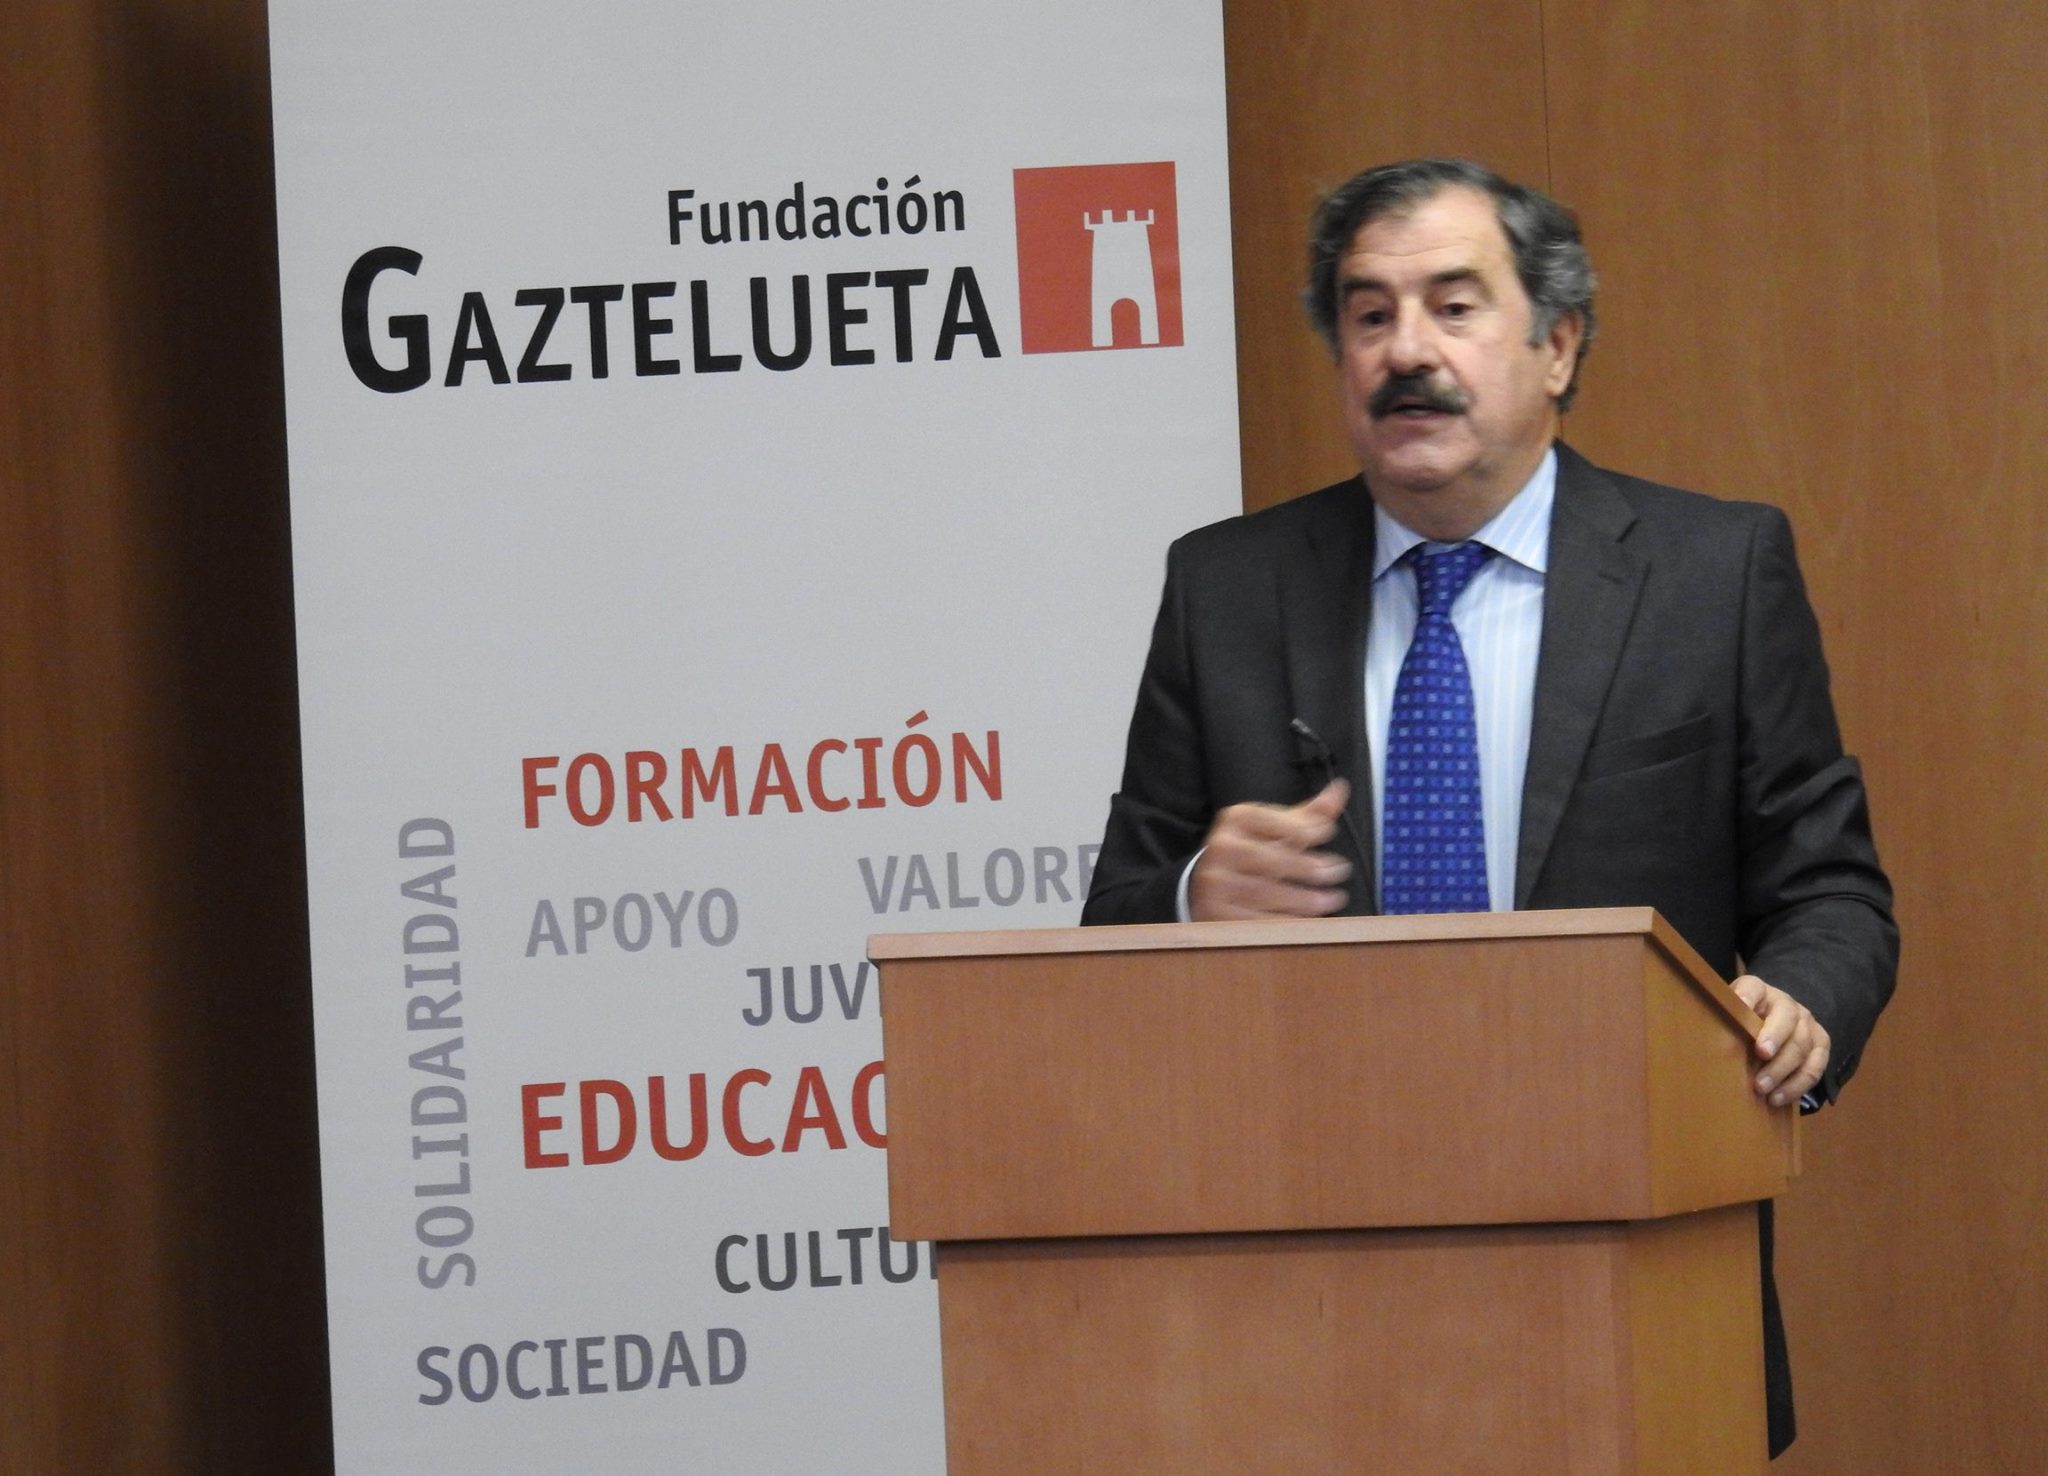 Ignacio Marco Gardoqui en el acto de la Fundación Gaztelueta 2017/18